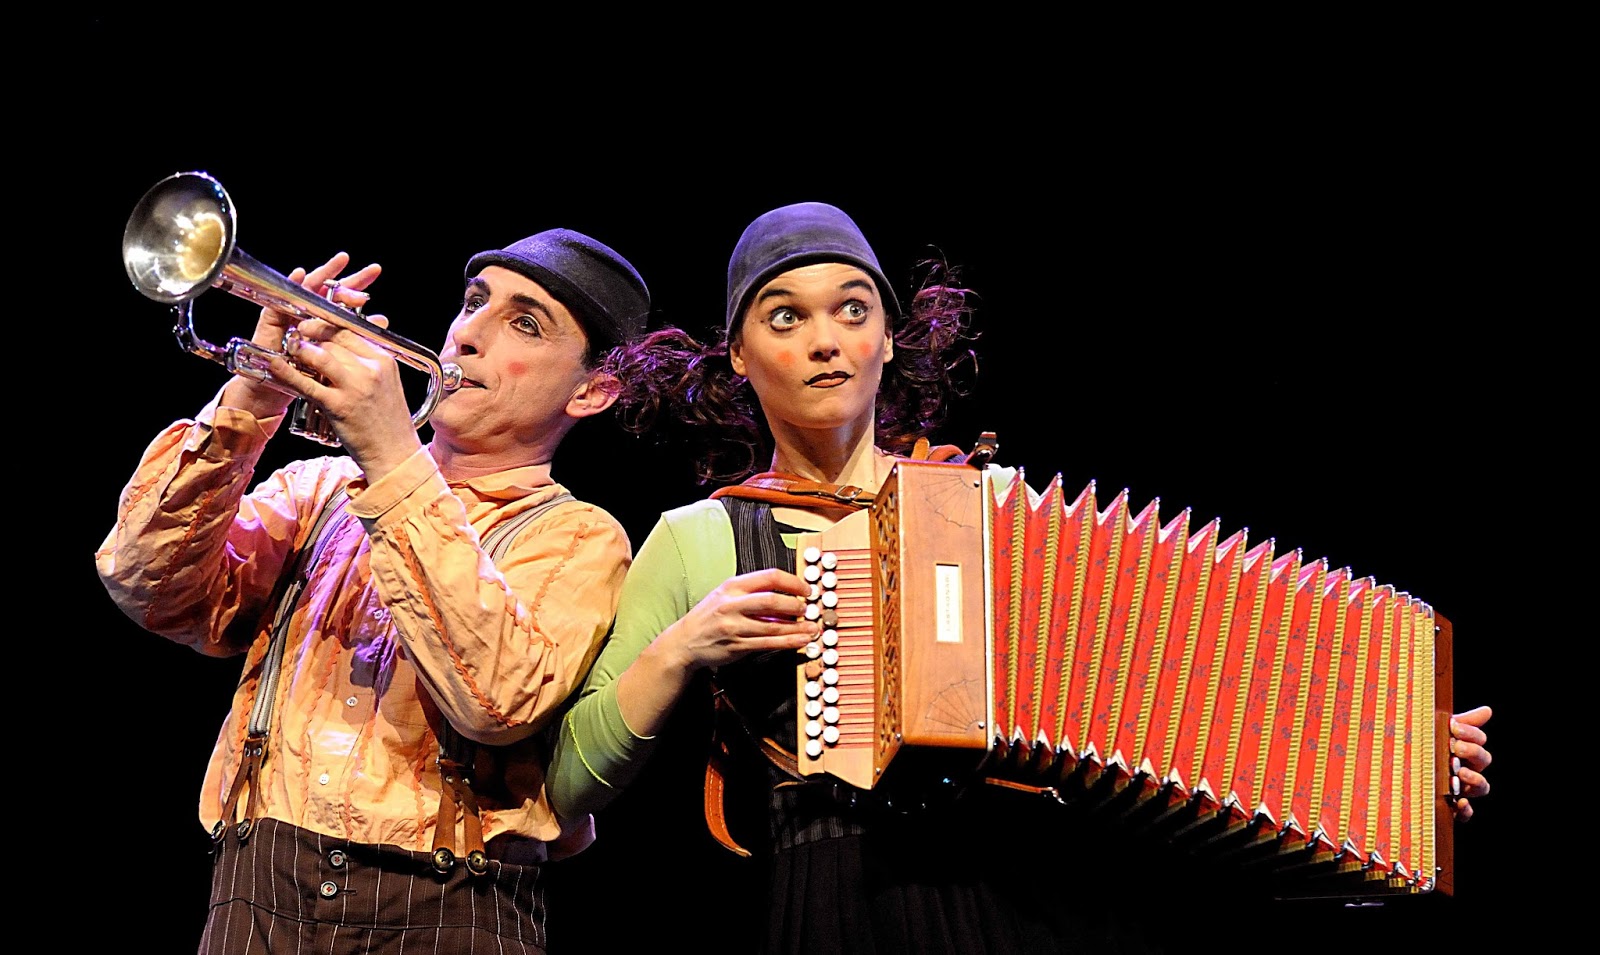 El dúo italo-suizo Baccalà ofrece en “Pss Pss” una pieza divertida, única y encantadora representada en más de 50 países de los cinco continentes 1